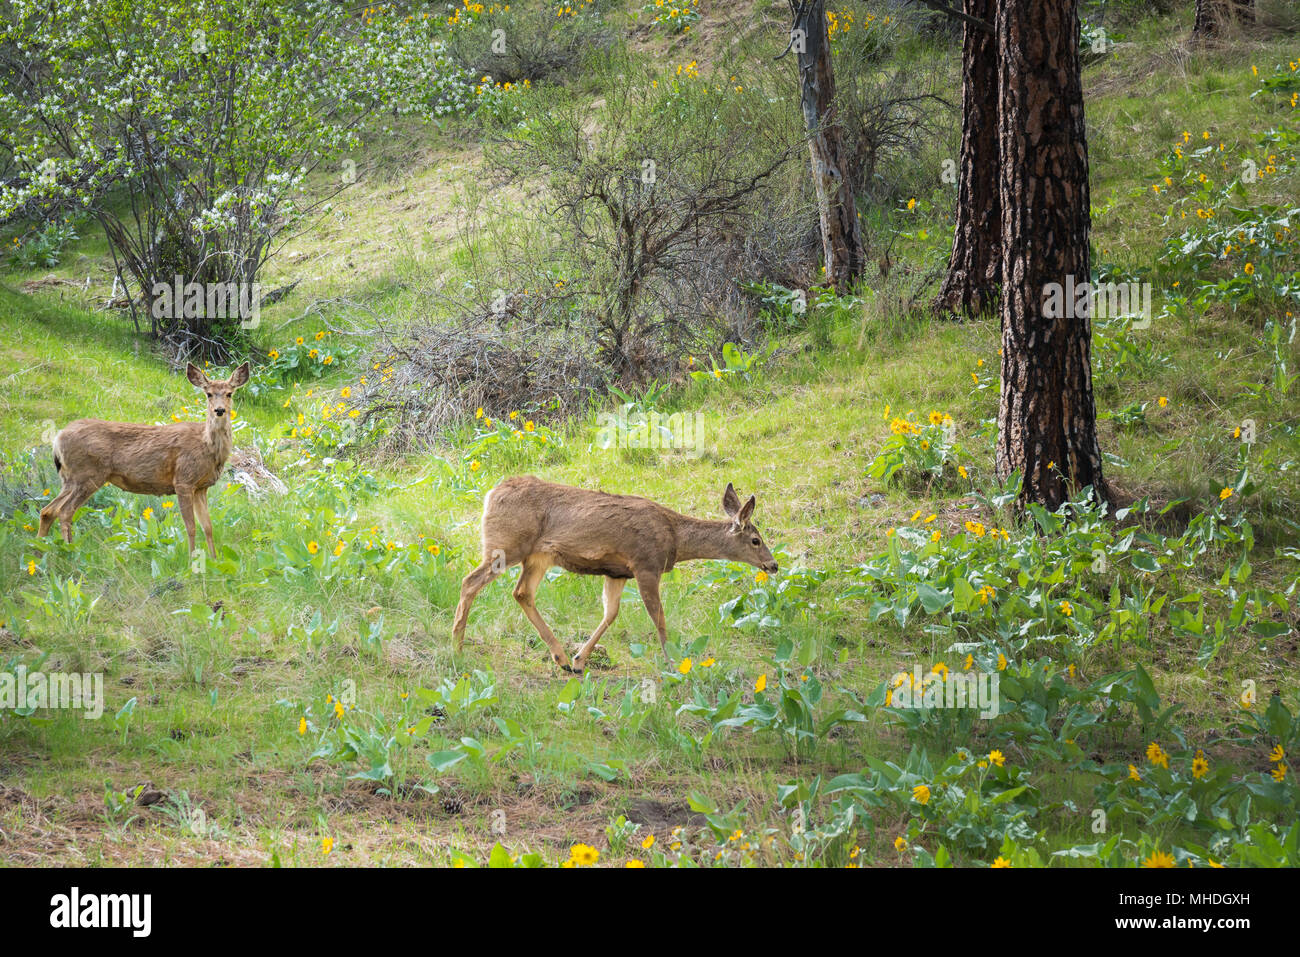 Deux cerf-mulet marche à travers la forêt de pins au printemps, la floraison d'amélanche, fleurs et feuilles deltoïdes arrowleaf Banque D'Images